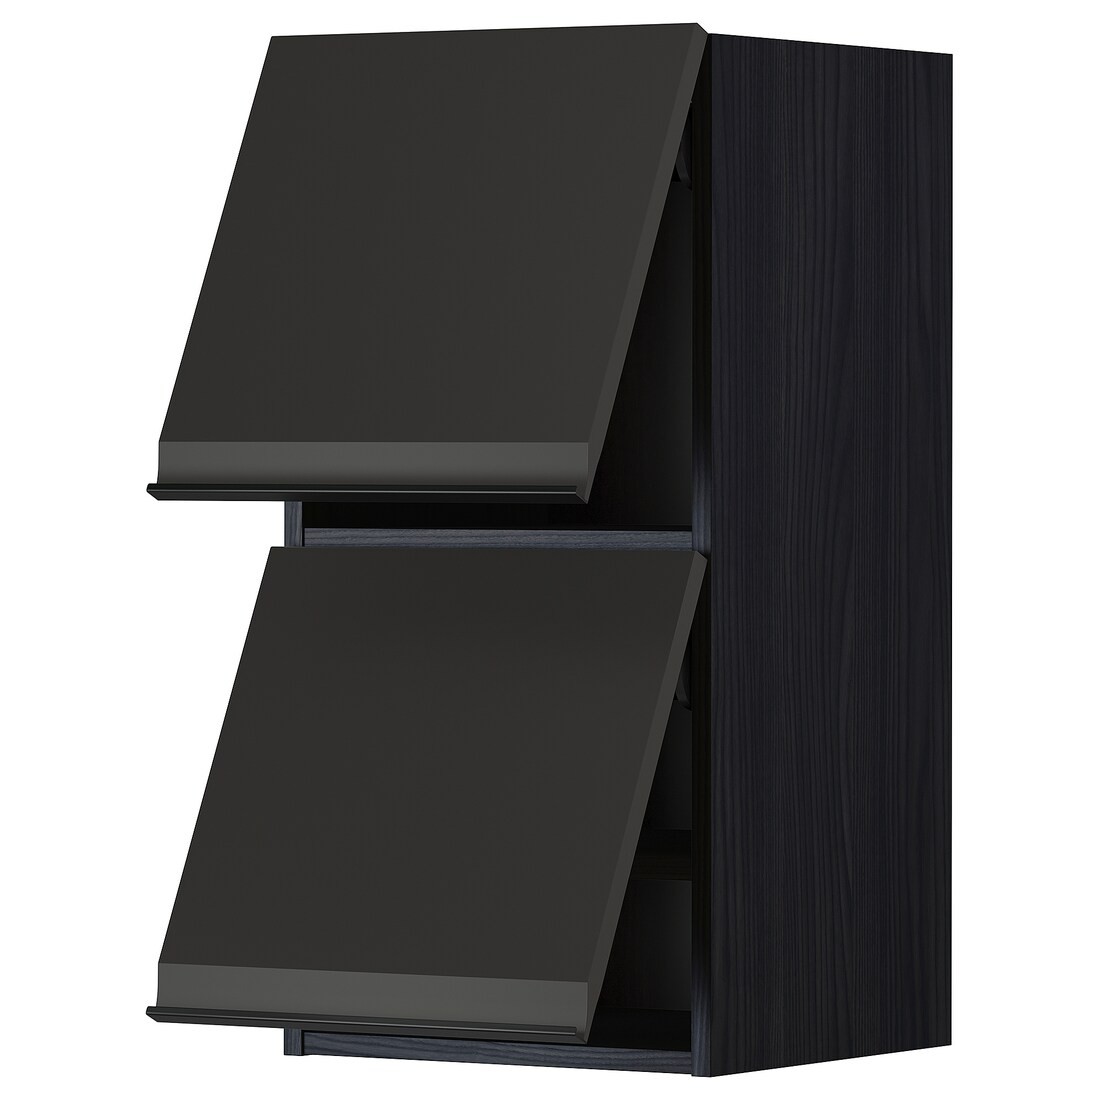 METOD МЕТОД Навесной горизонтальный шкаф / 2 двери, черный / Upplöv матовый антрацит, 40x80 см